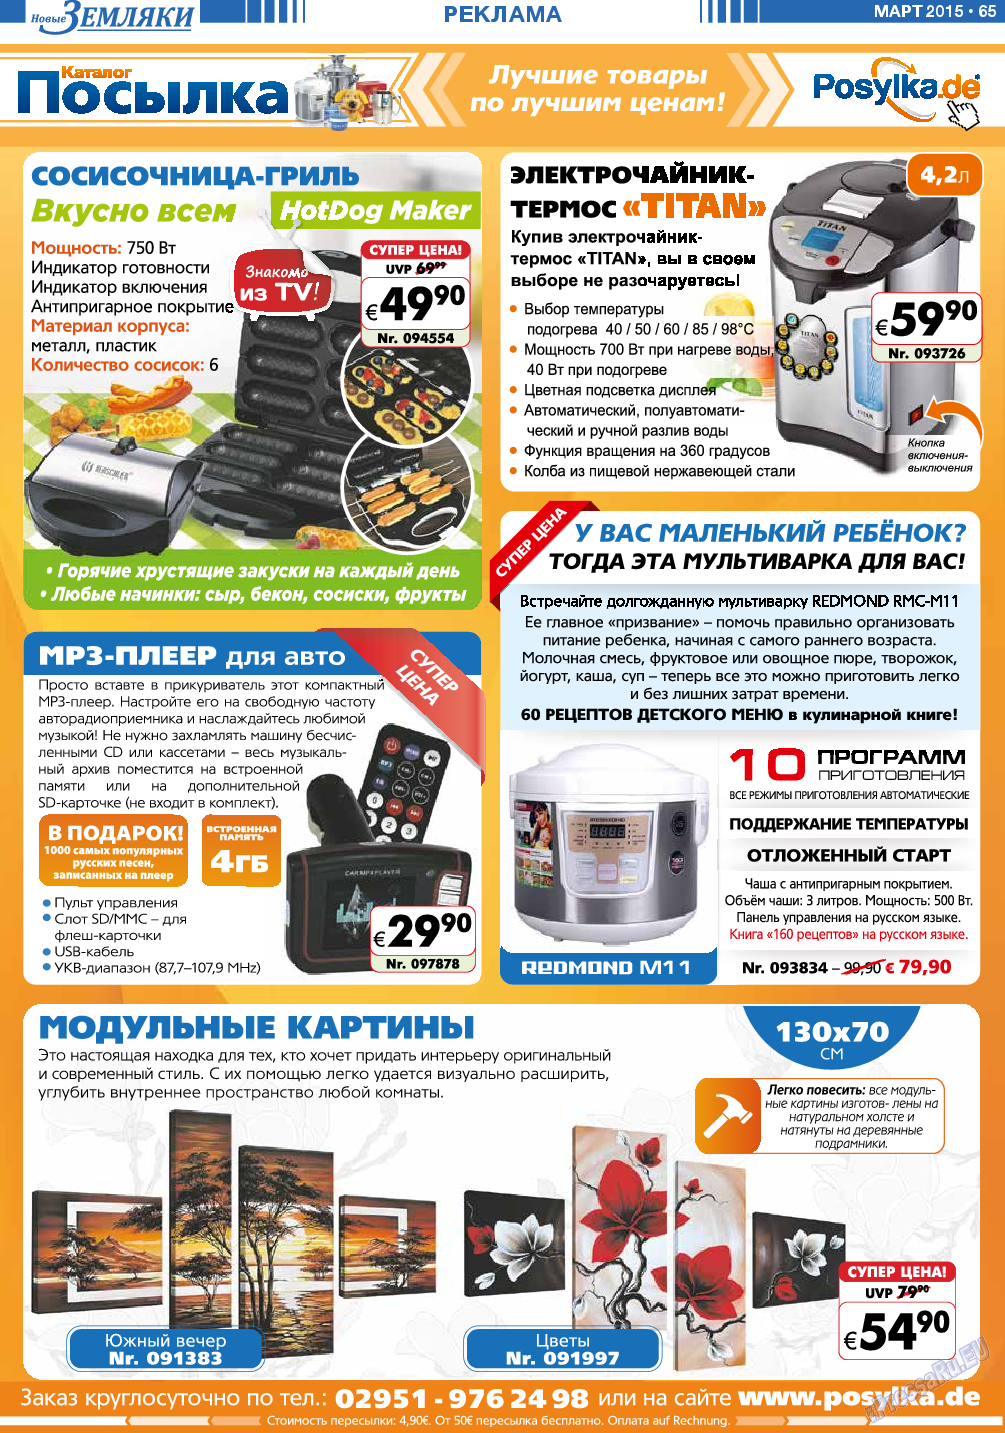 Новые Земляки, газета. 2015 №3 стр.65